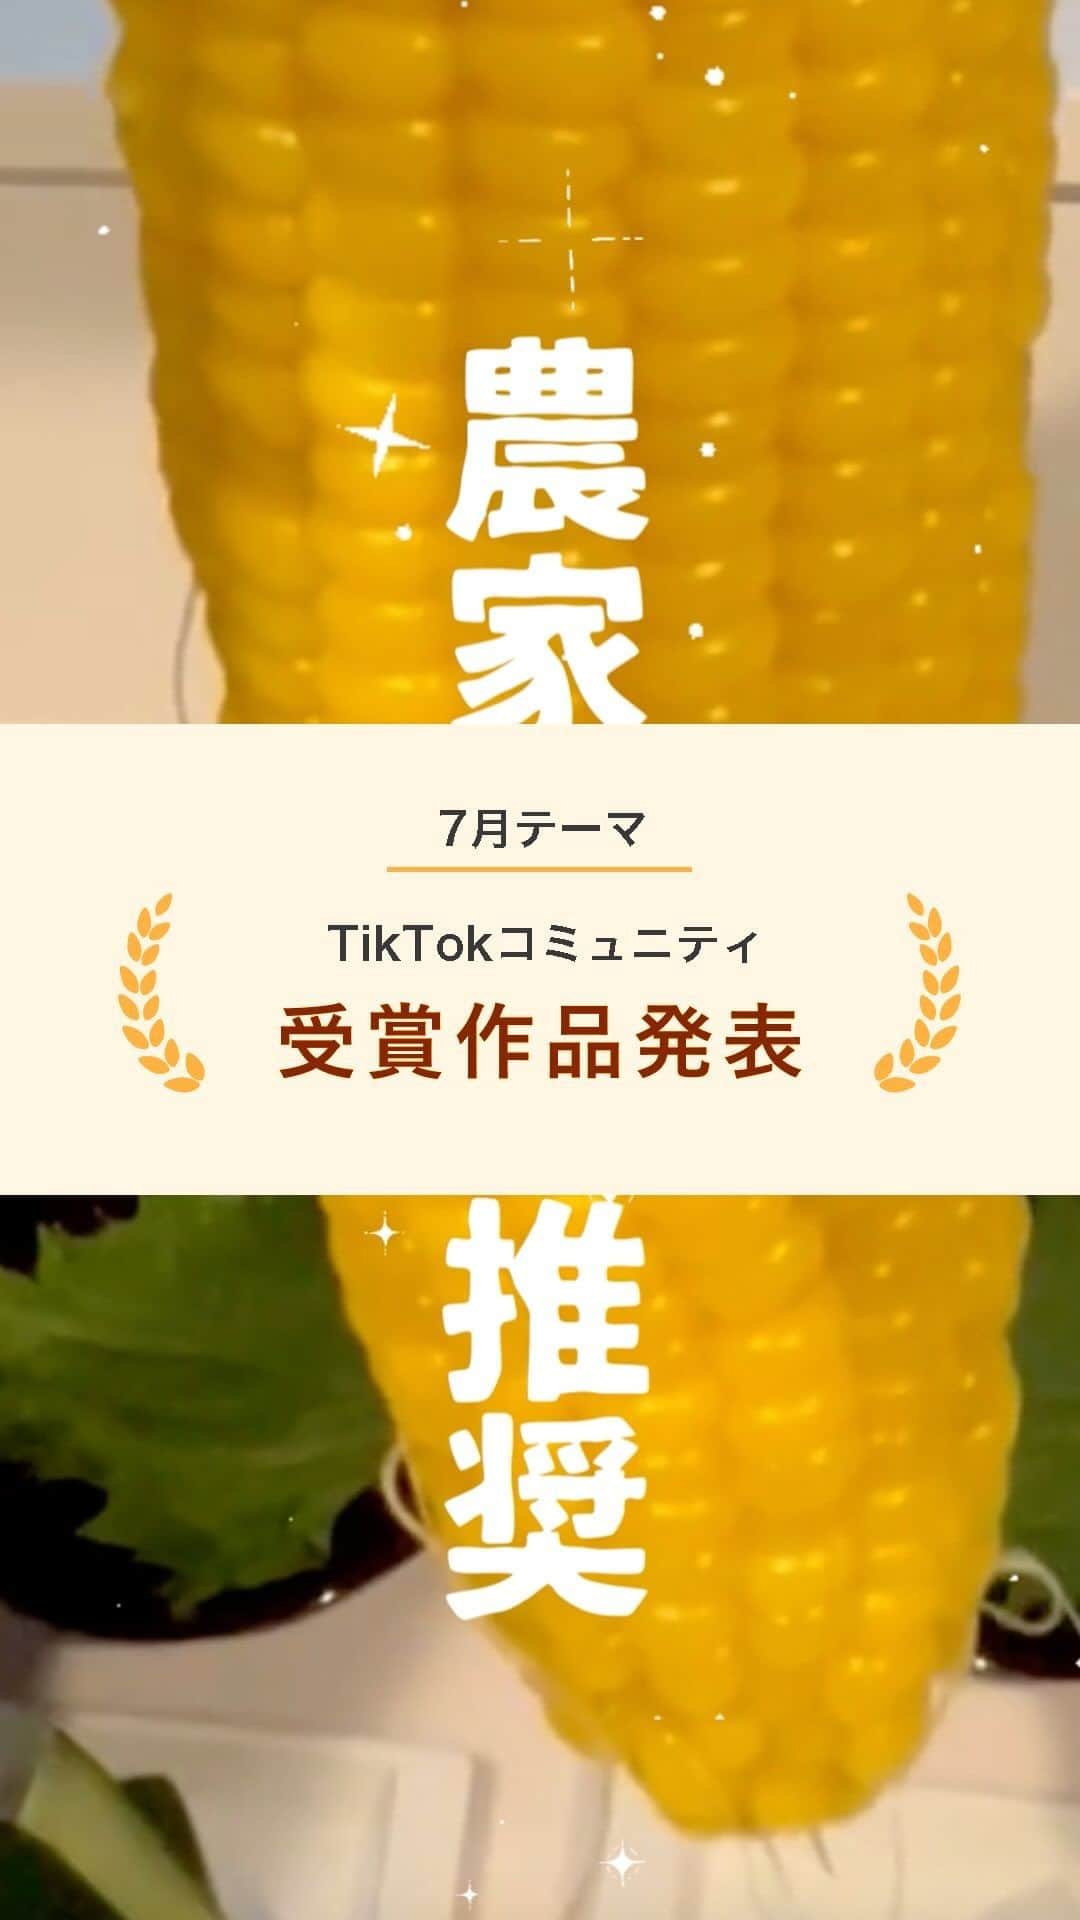 スマホの写真が売れちゃうアプリ「スナップマート」のインスタグラム：「@snapmart.jp←過去の動画受賞作品はリール動画からチェックしてね。  【TikTok研究コミュニティ3期生 7月動画テーマ「食」】  7月から活動を開始したSnapmart TikTok研究コミュニティ3期生。今回は54名の方に参加していただきました！  旅を発信されている方やコスメが好きな方、2期から継続して入ってくださっている方など今回もバリエーションに富んだメンバーで構成されています。 ここから半年間、TikTok研究コミュニティ3期生の皆様には、月に1度のテーマに合わせて動画を作っていただきます。  7月の動画テーマは「食」  得意レシピやおすすめの飲食店など、様々な角度から動画を作っていただきました。 今回はそんな応募作品の中から、優秀作品を発表します！  👑shoko10gohanさん( @shoko10gohan )   【工夫したポイント】  ・夏フェスっぽい見せ方 ・文字の見せ方を工夫し、視聴者の目を引くようにした  【スナップマートからのコメント】  「とうもろこしの茹で方」という動画だからこそ伝わる企画設計。 農家さん推奨、甘すぎて感動する　などキャッチコピーセンス、そして何より文字入れの仕方が統一感もありつつメリハリがあり、見てて楽しい動画でした！  ＊＊＊  Snapmartでは、 スキルアップを目指すクリエイターさんのために セミナーを開催したり、 写真技術UPのためのTIPSを作っています。 ぜひクリエイター登録してくださいね♪  クリエイター登録は、@snapmart.jp の プロフィールリンクから アプリをダウンロードしてね。  ＊＊＊    #snapmart  #スナップマート   #カメラ練習中 #カメラ練習中🔰 #写真練習中 #写真うまくなりたい #商品撮影 #ショート動画 #ショートムービー #動画 #動画練習 #とうもろこし #野菜大好き」